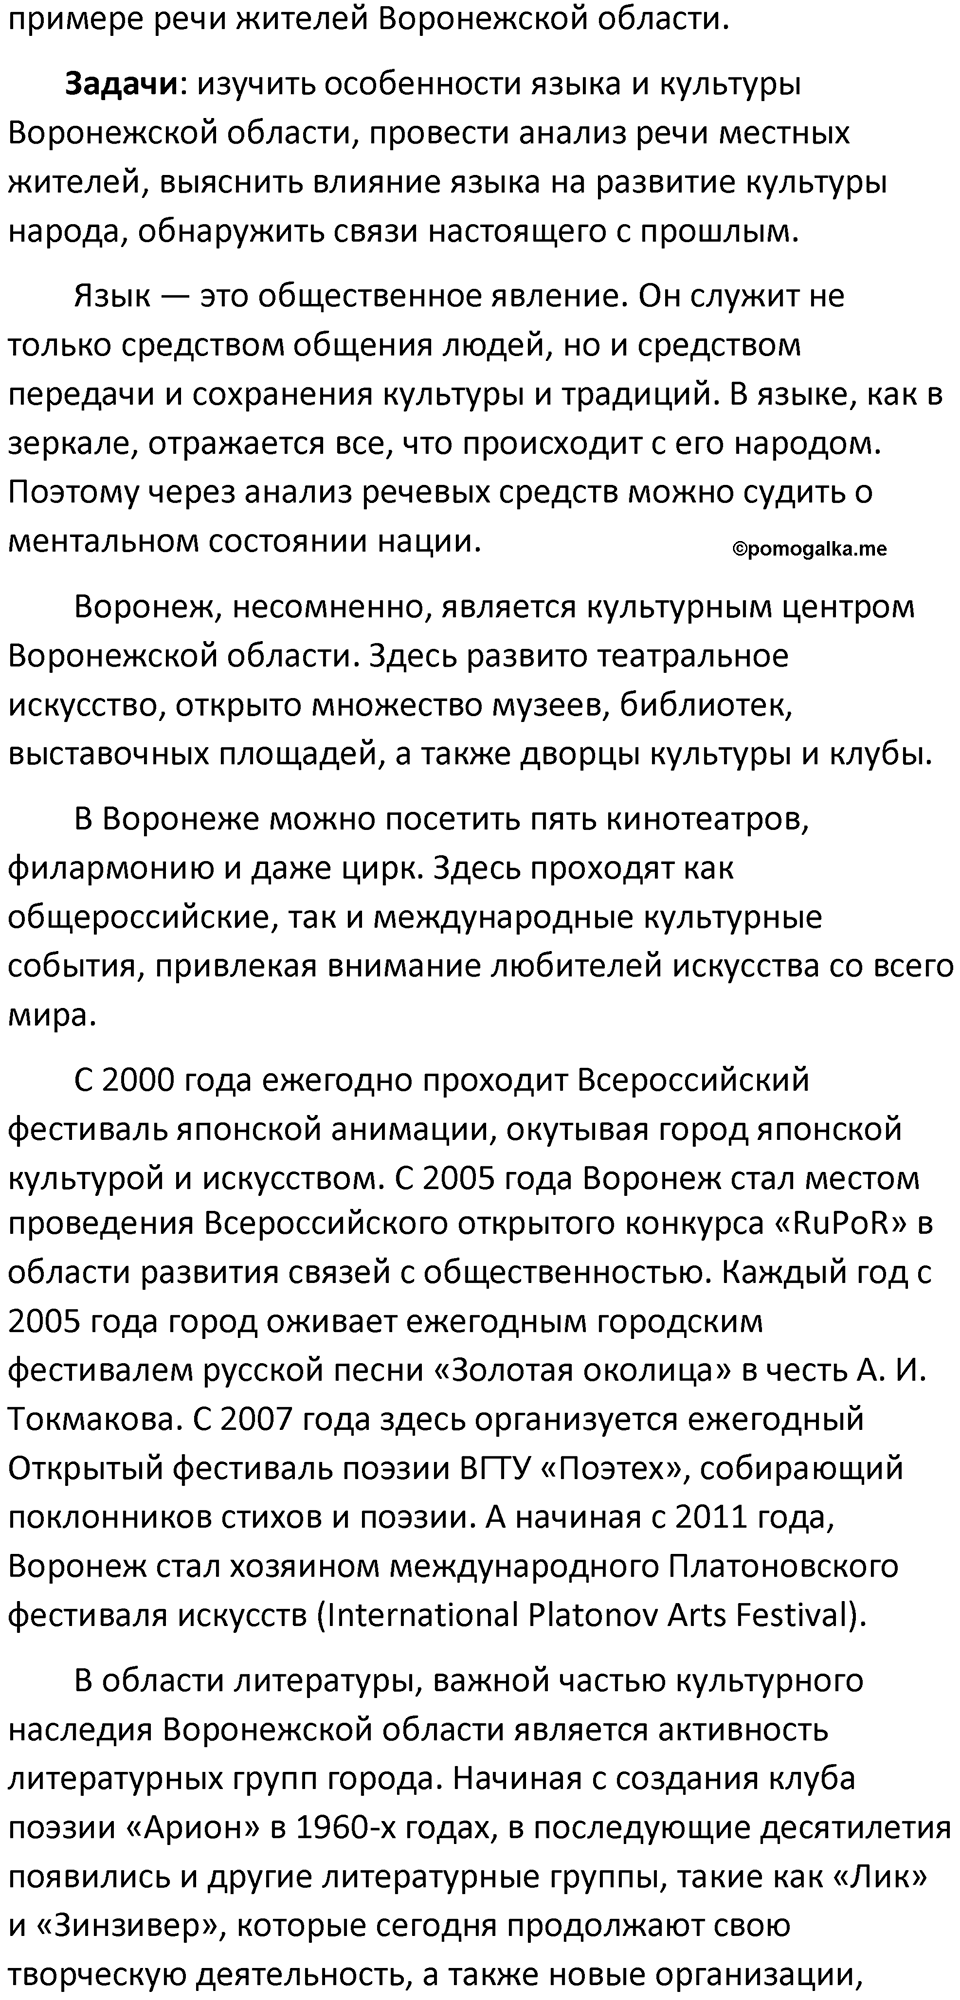 разбор упражнения №4 русский язык 8 класс Бархударов 2023 год